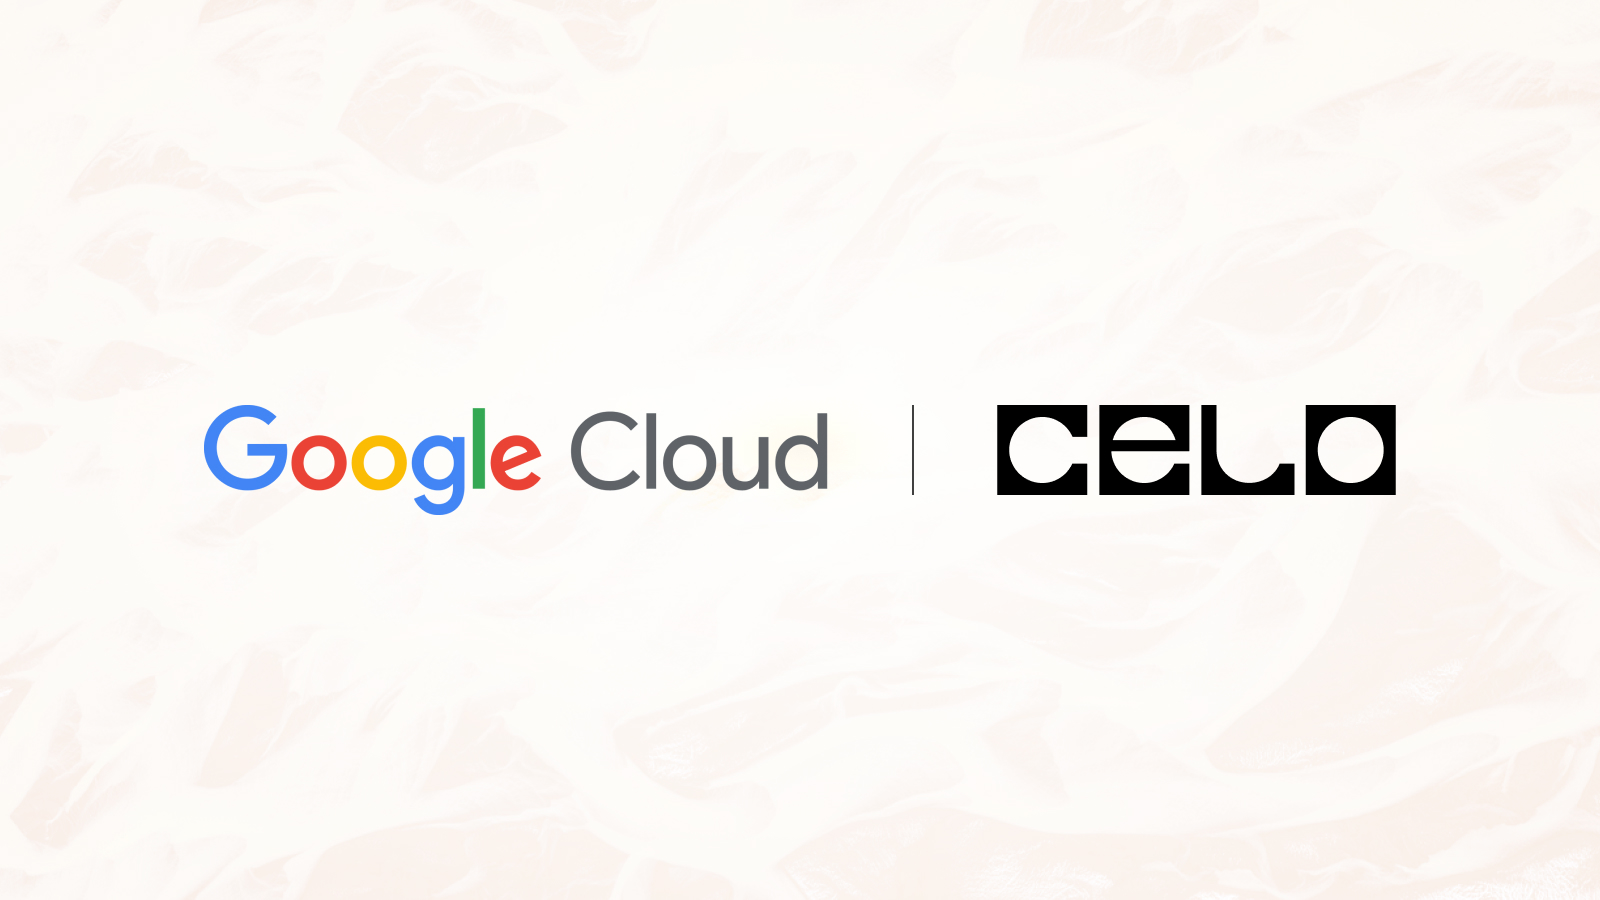 Google Cloud kooperiert mit Celo Network als Validator und erleichtert die Ethereum Layer 2 Migration